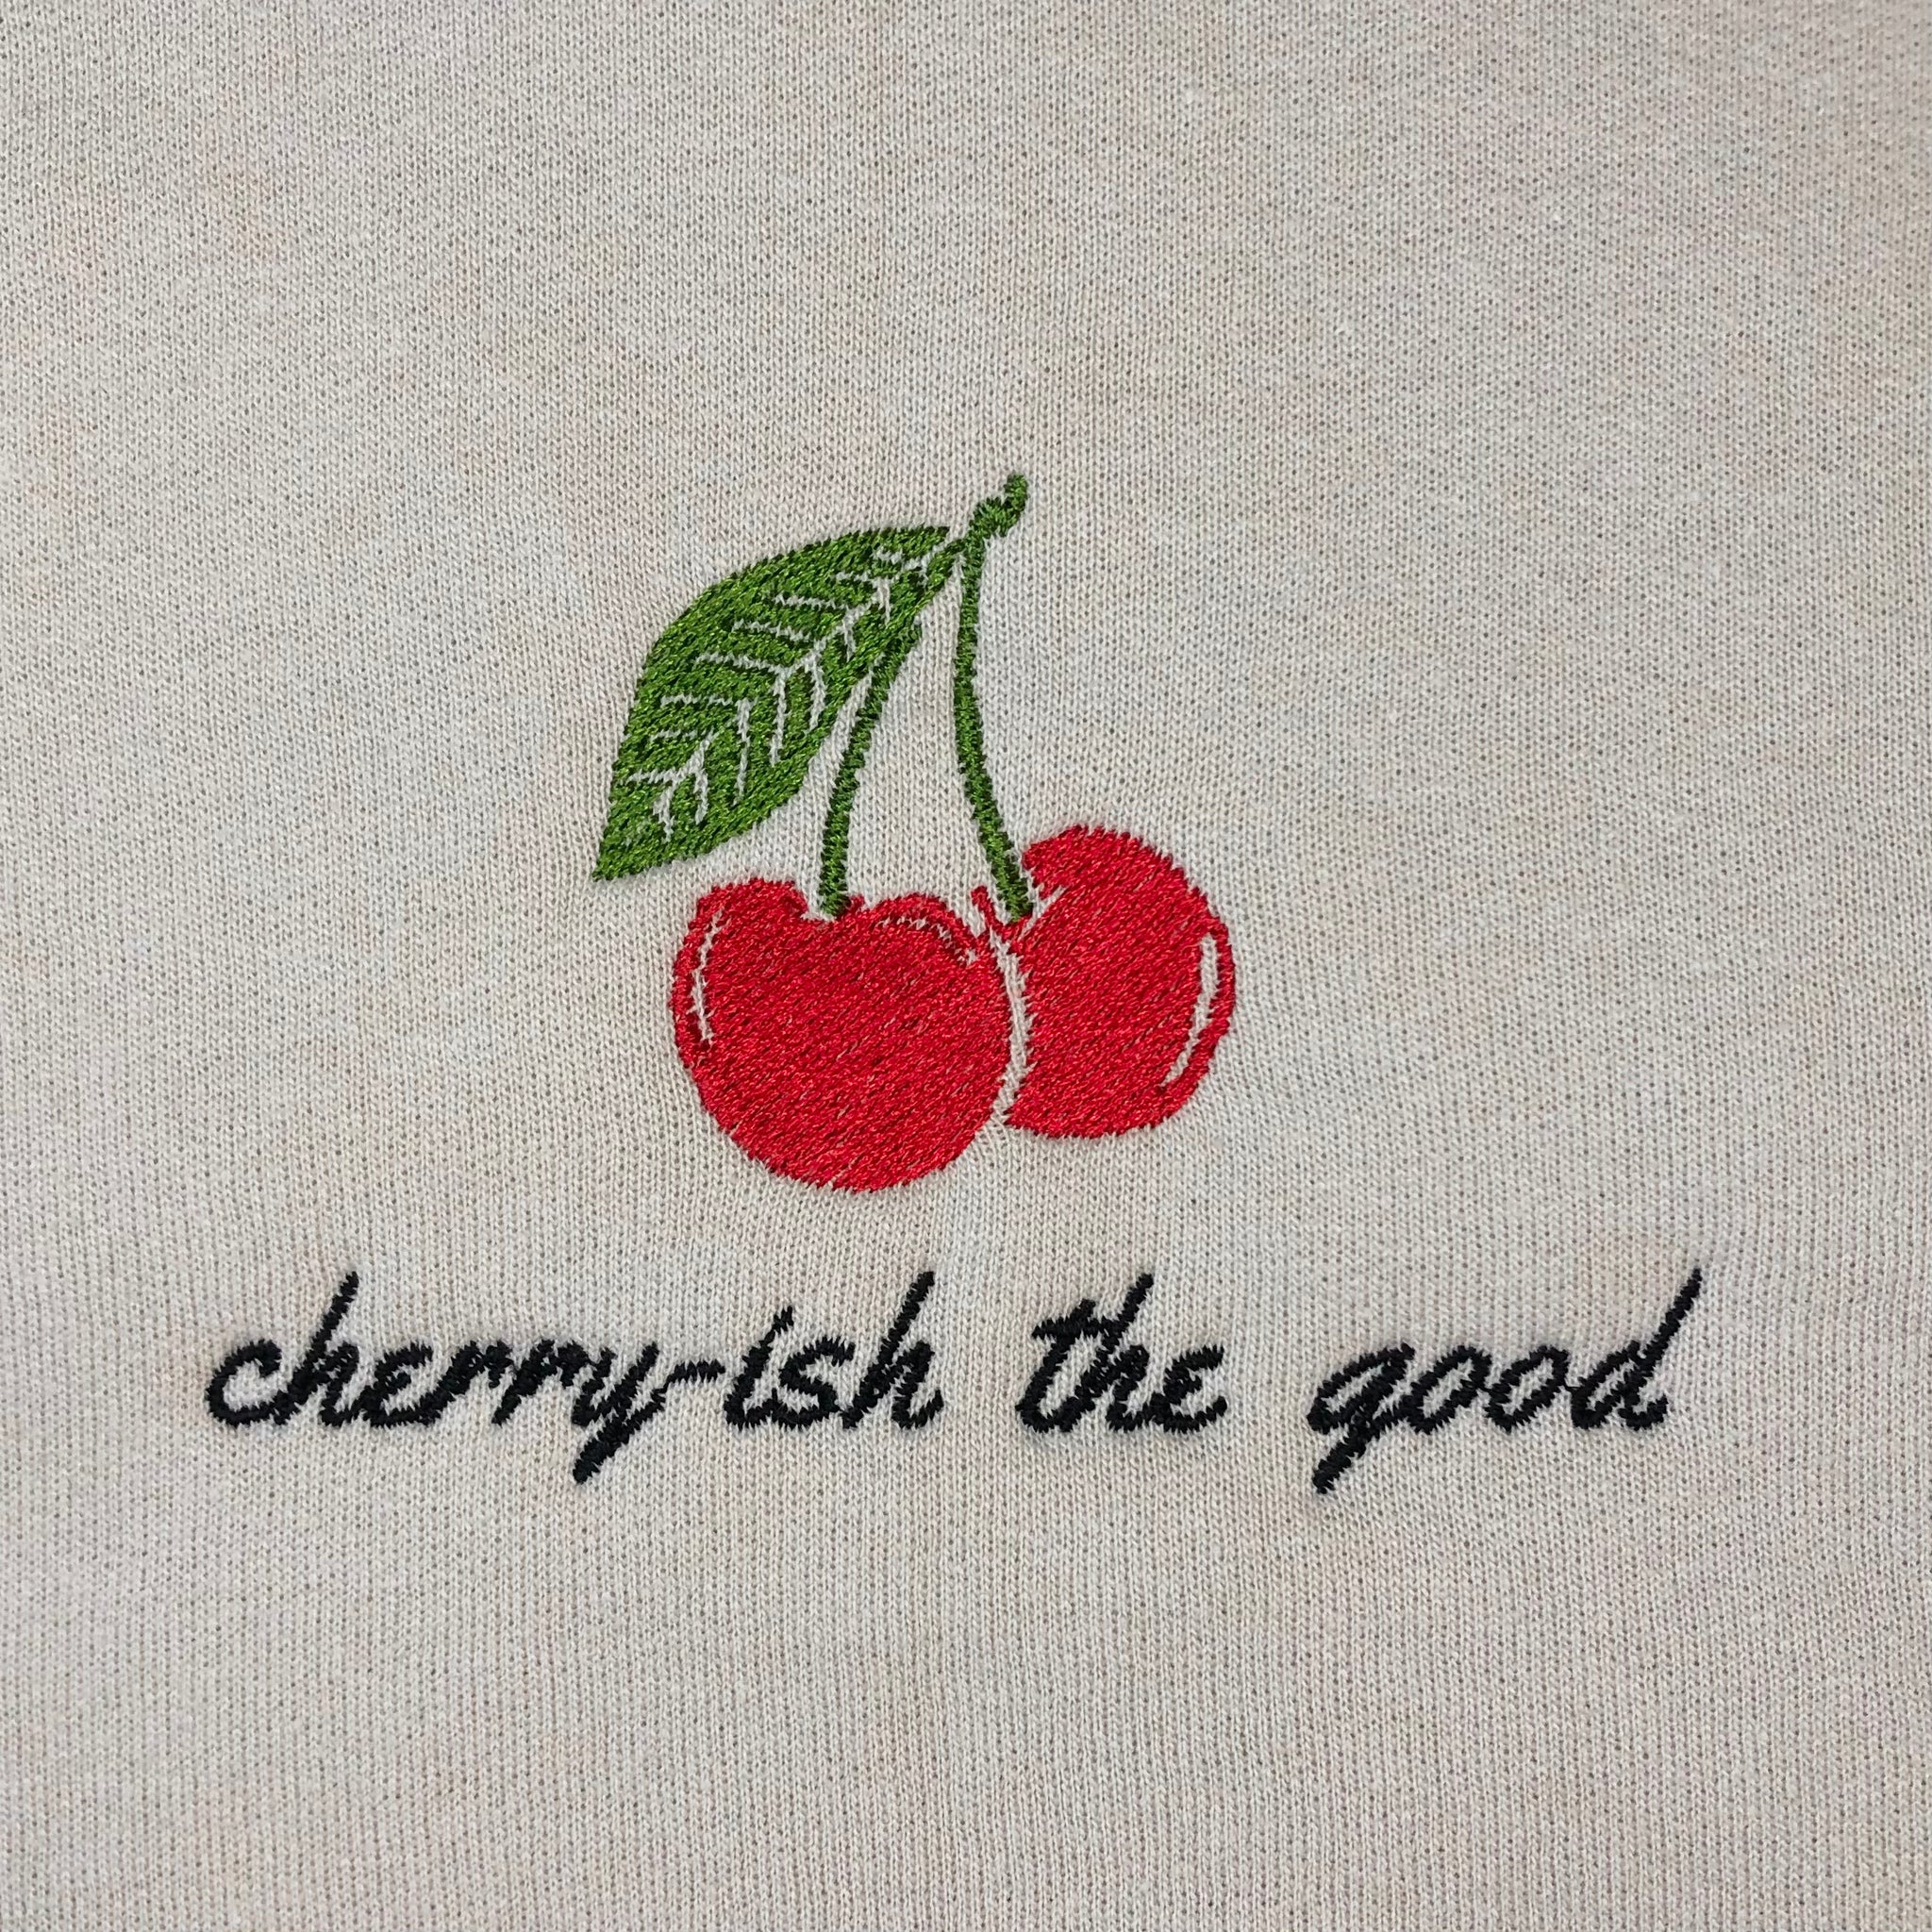 Cherry-ish the Good